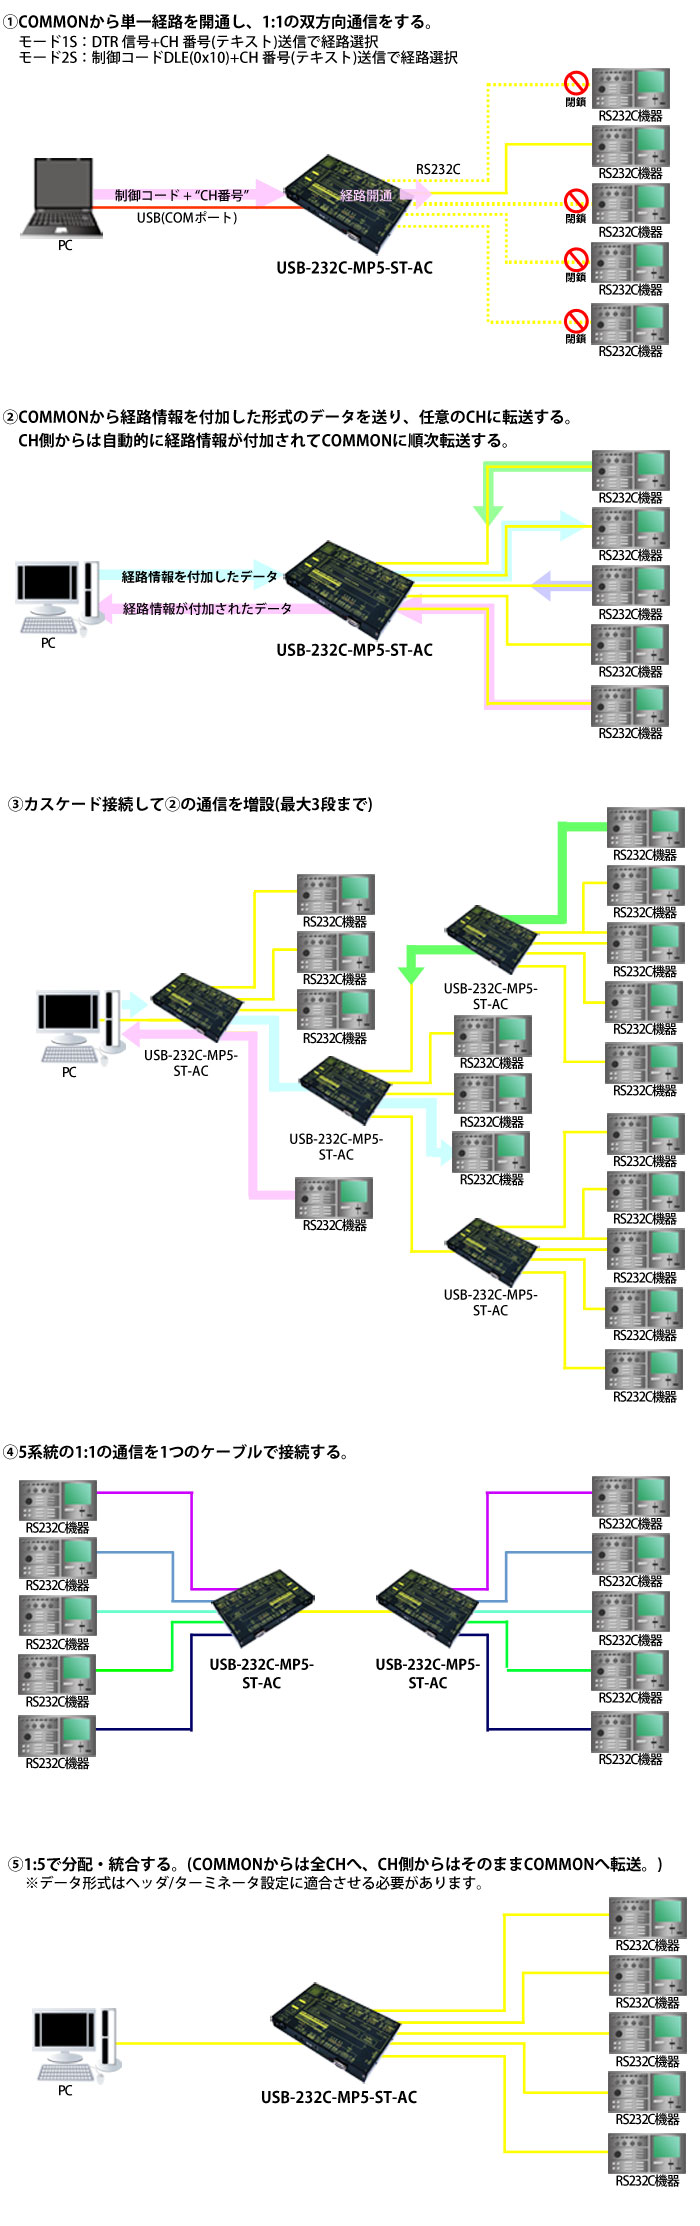 USB-232C-MP5-ST-AC接続例